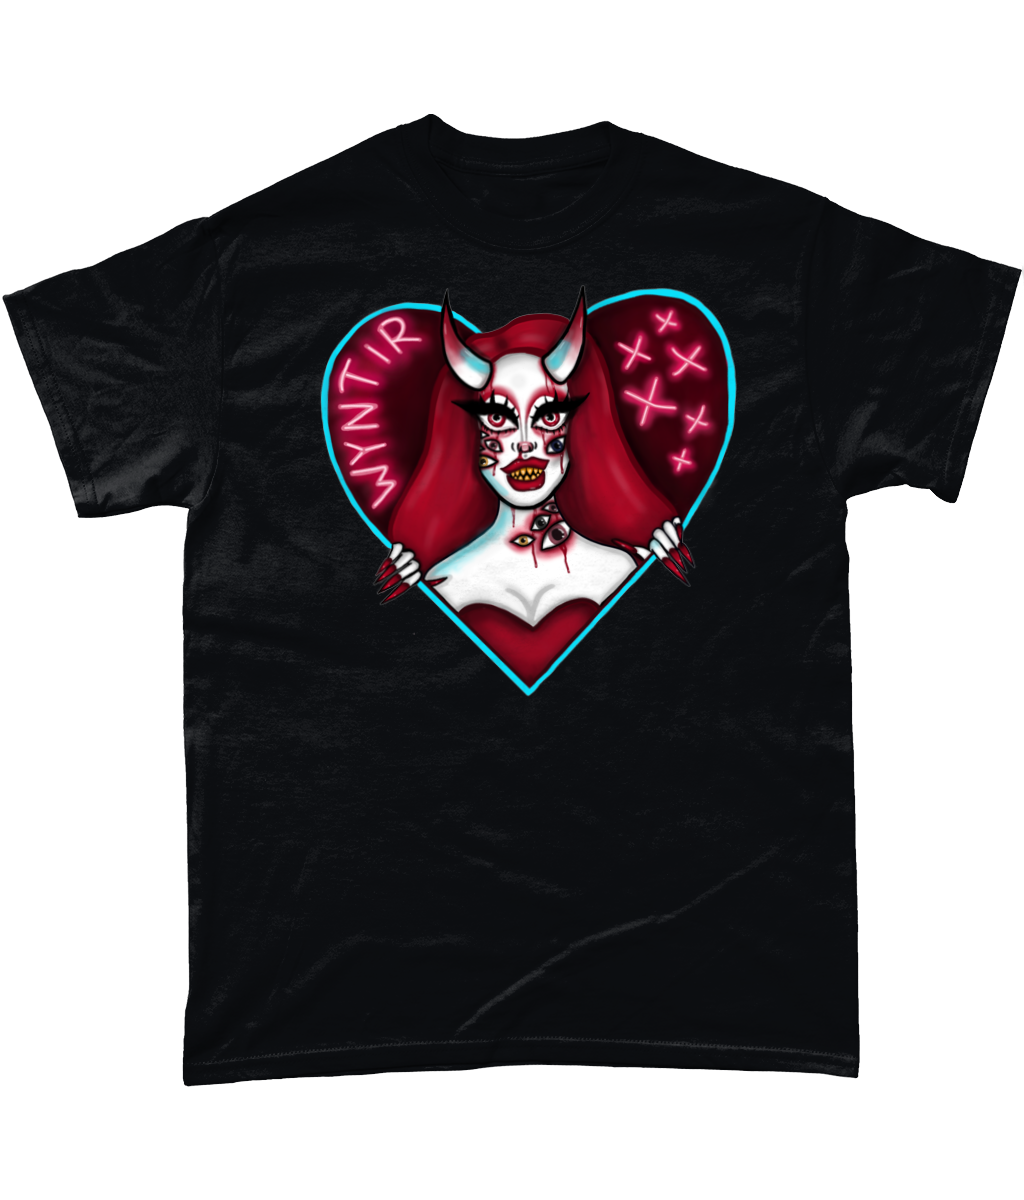 Wyntir Rose - Neon Demon T-Shirt